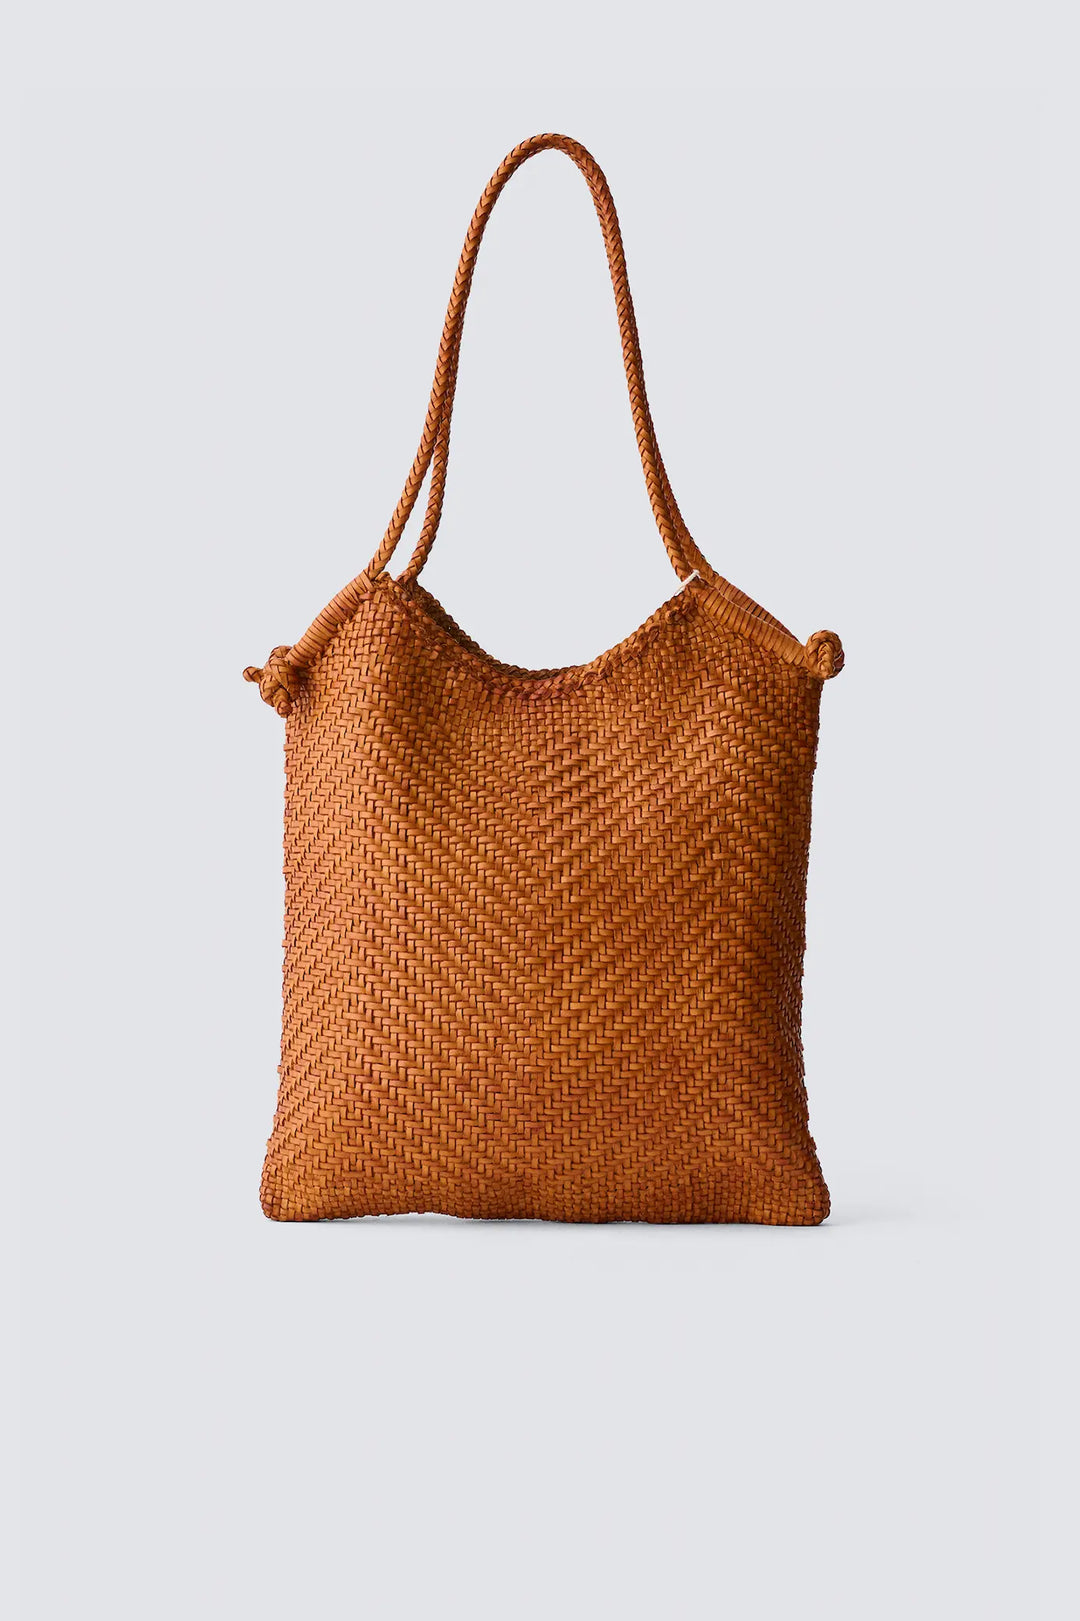 Dragon Diffusion - Minga Tote Tan - Woven Leather Bag Handmade